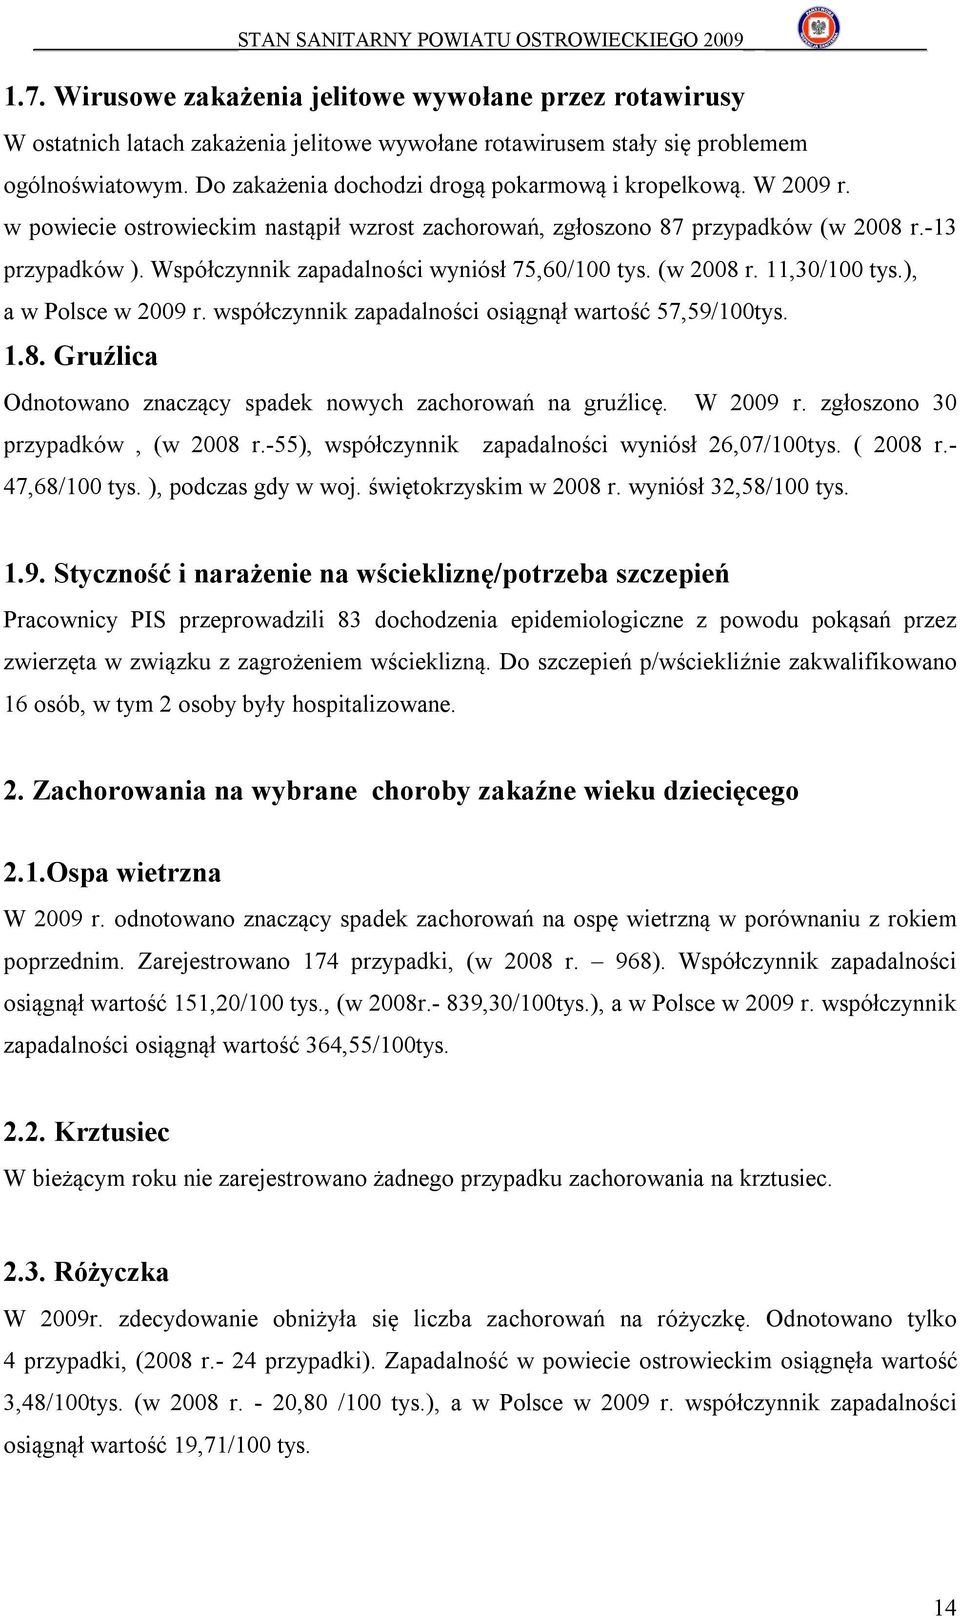 Współczynnik zapadalności wyniósł 75,60/100 tys. (w 2008 r. 11,30/100 tys.), a w Polsce w 2009 r. współczynnik zapadalności osiągnął wartość 57,59/100tys. 1.8. Gruźlica Odnotowano znaczący spadek nowych zachorowań na gruźlicę.